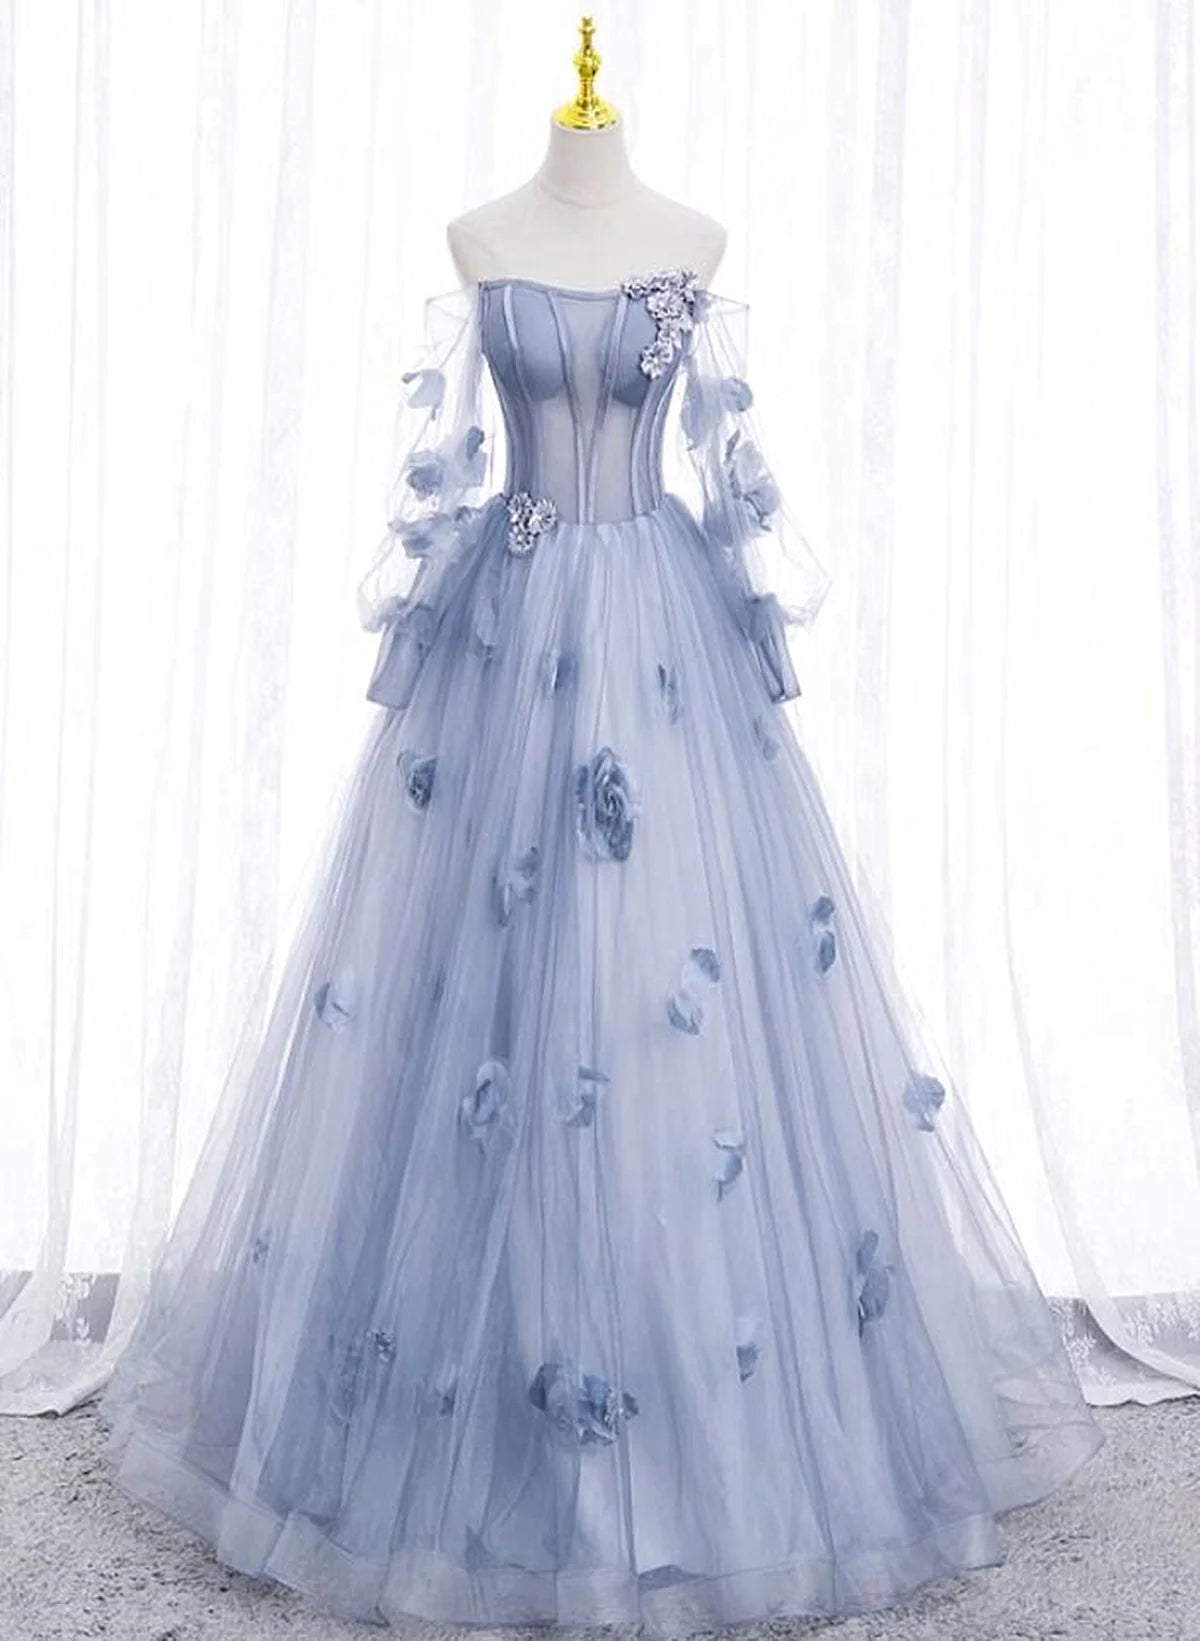 Lovely Light Blue Tulle Long Sleeves Sweet 16 Dress Outfits For Girls, Light Blue Flowers Formal Dress.